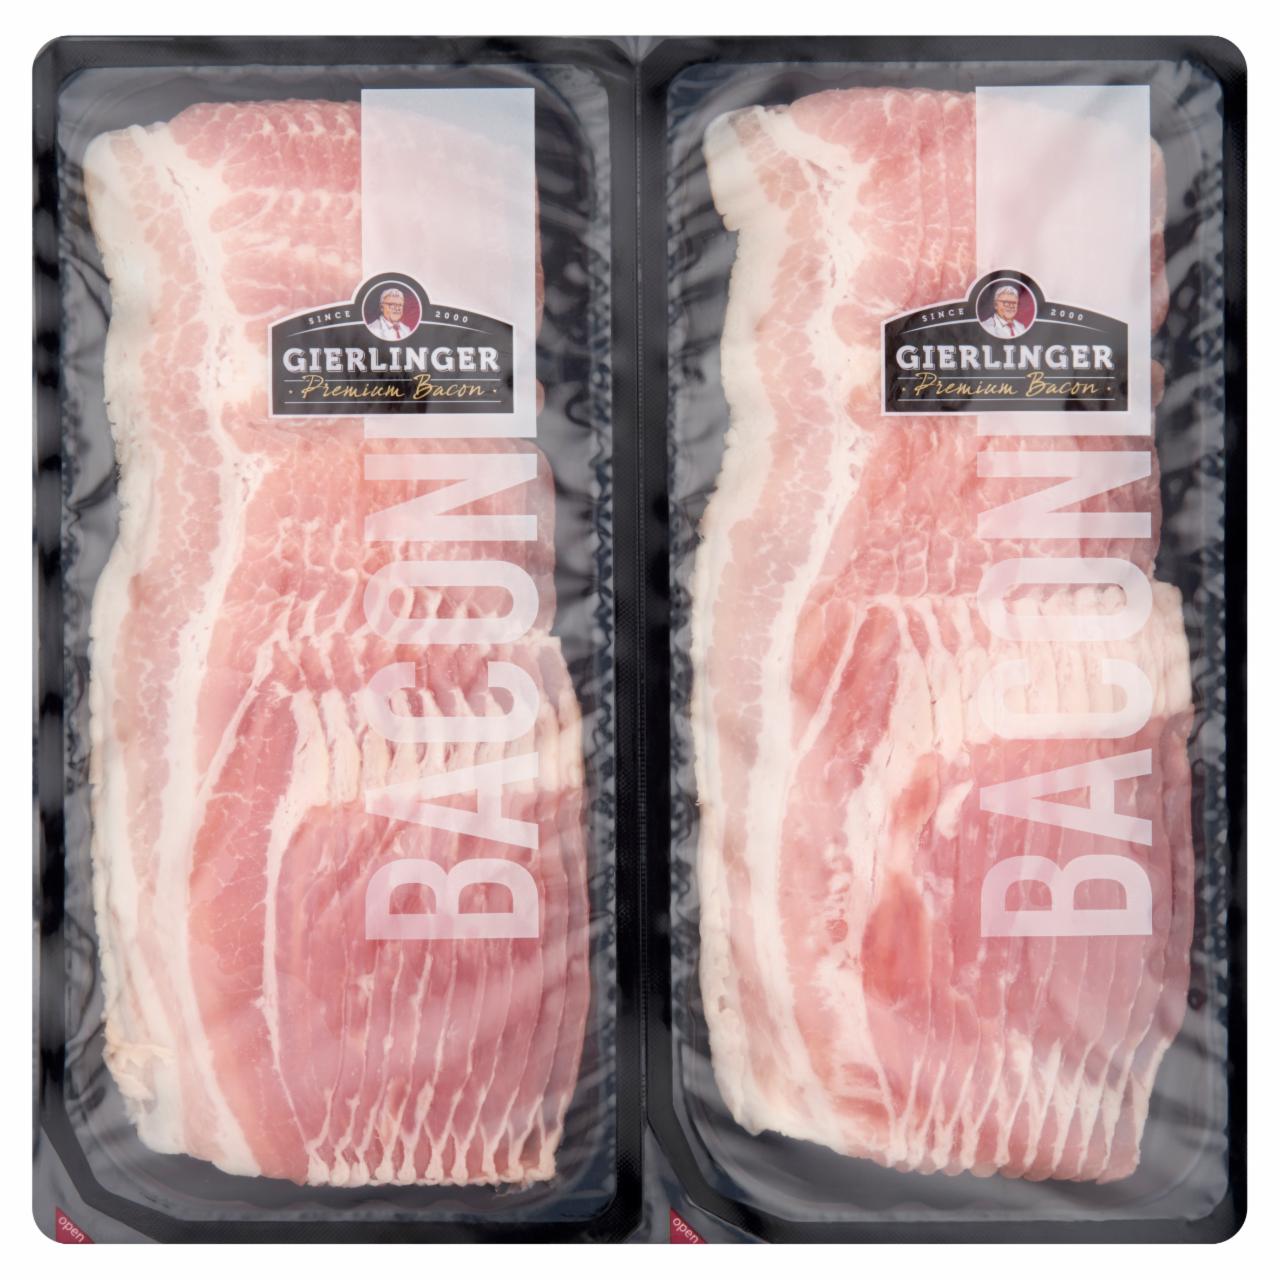 Képek - Gierlinger szeletelt bacon szalonna 2 x 200 g (400 g)